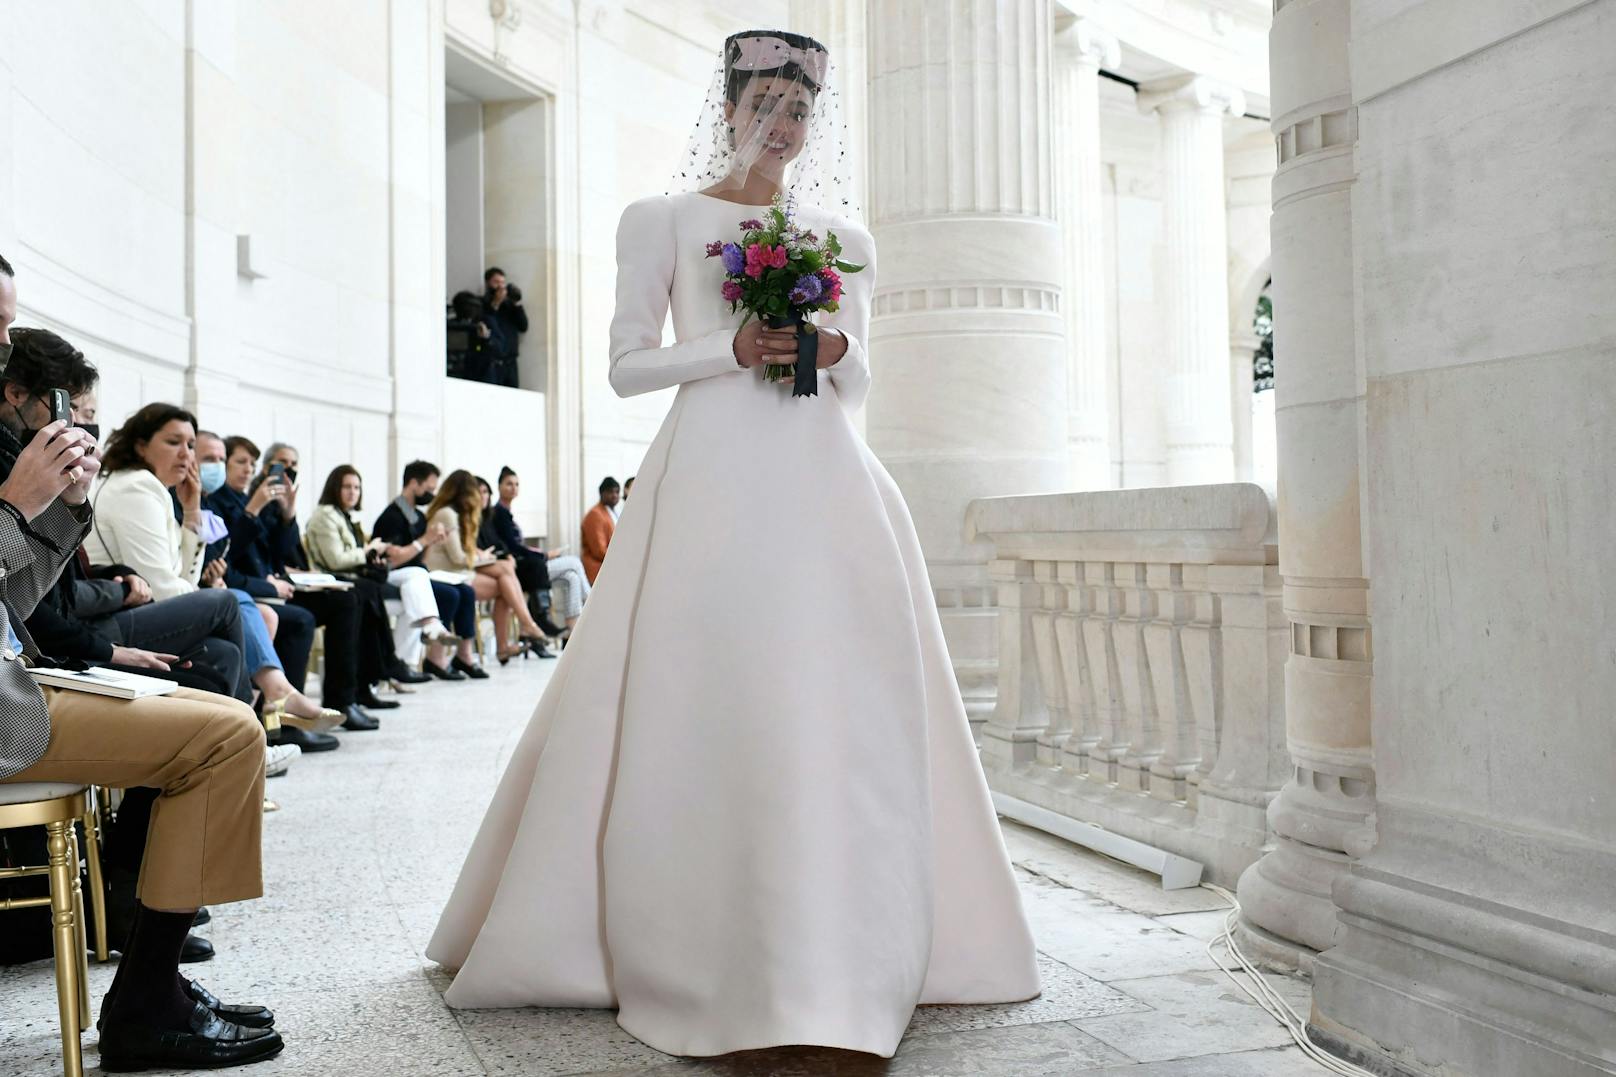 Das Highlight einer jeden Haute Couture Show: Das Brautkleid, bei dem sich Designerin&nbsp;<a href="https://www.heute.at/s/chanel-metiers-dart-2021-nur-kristen-stewart-war-gast-100117126">Virginie Viard</a>&nbsp;zurückhielt und auf zeitlose Eleganz ohne Schnickschnack setzte.